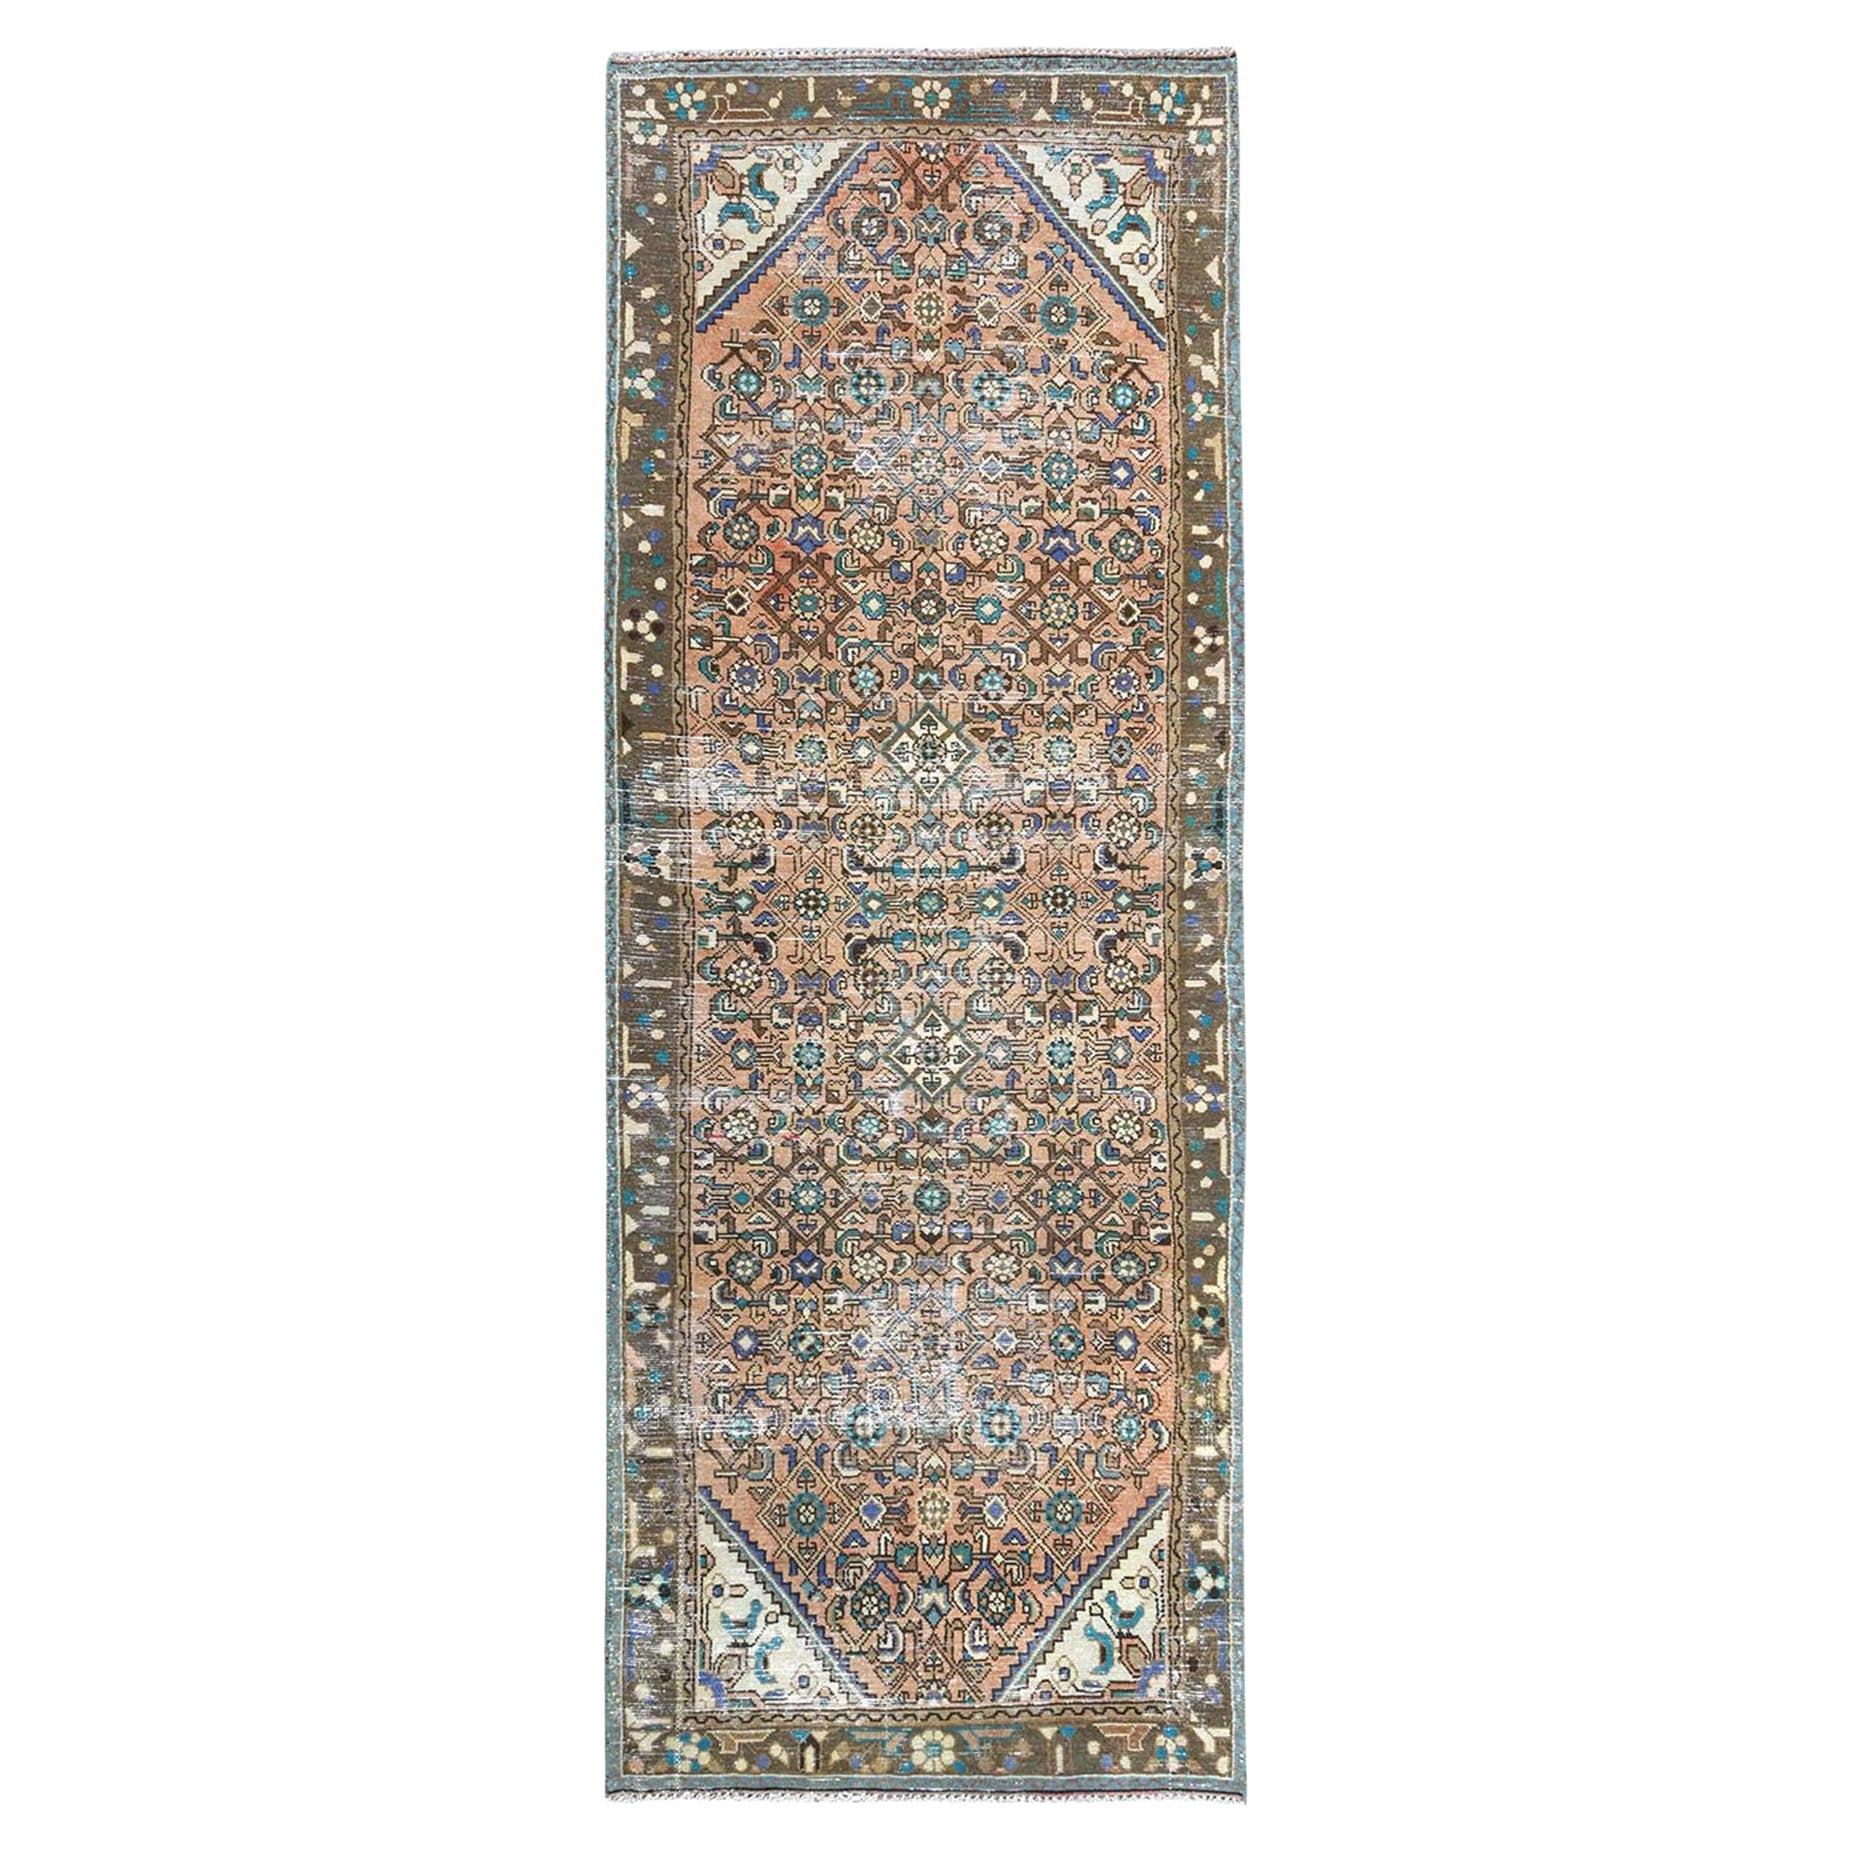 Brauner hellbrauner persischer Hamadan-Teppich aus reiner Wolle, handgeknüpft, in Kurzform